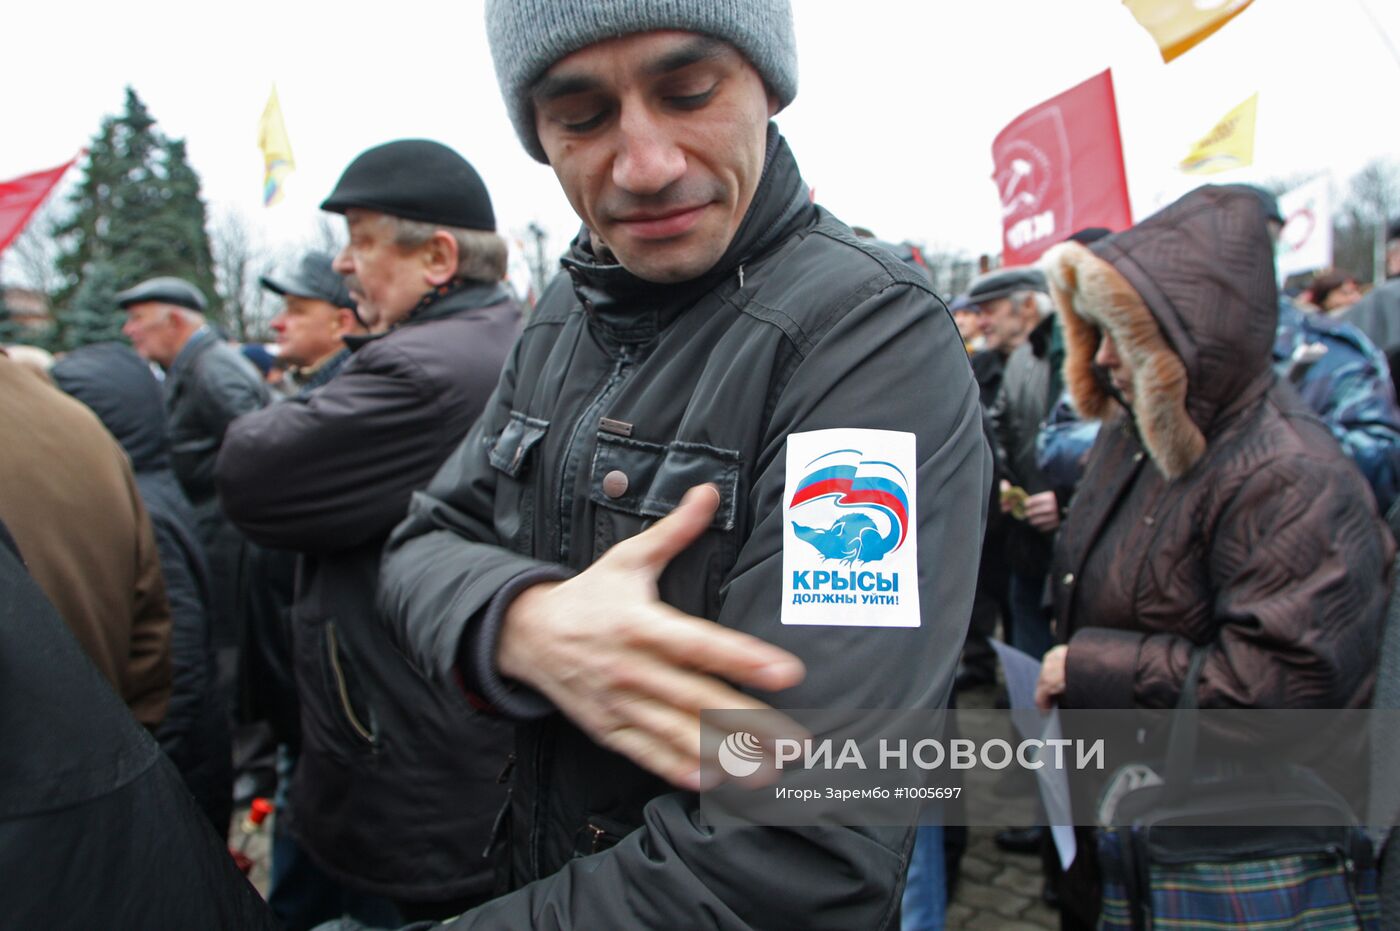 Акция протеста "За честные выборы!" в городах России